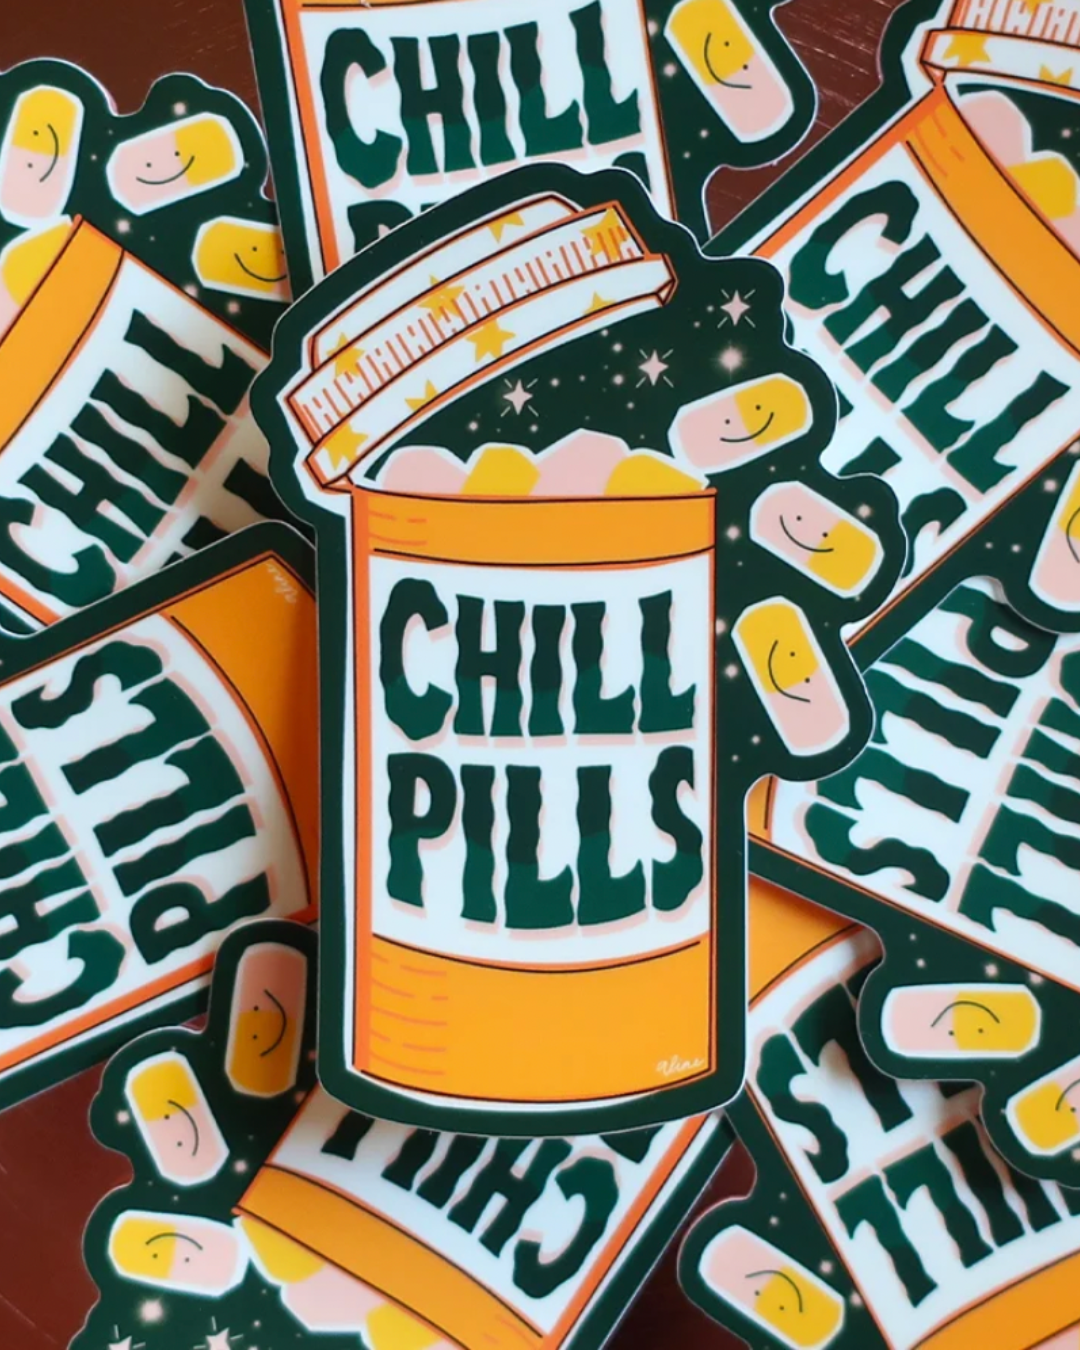 Chill Pill Sticker